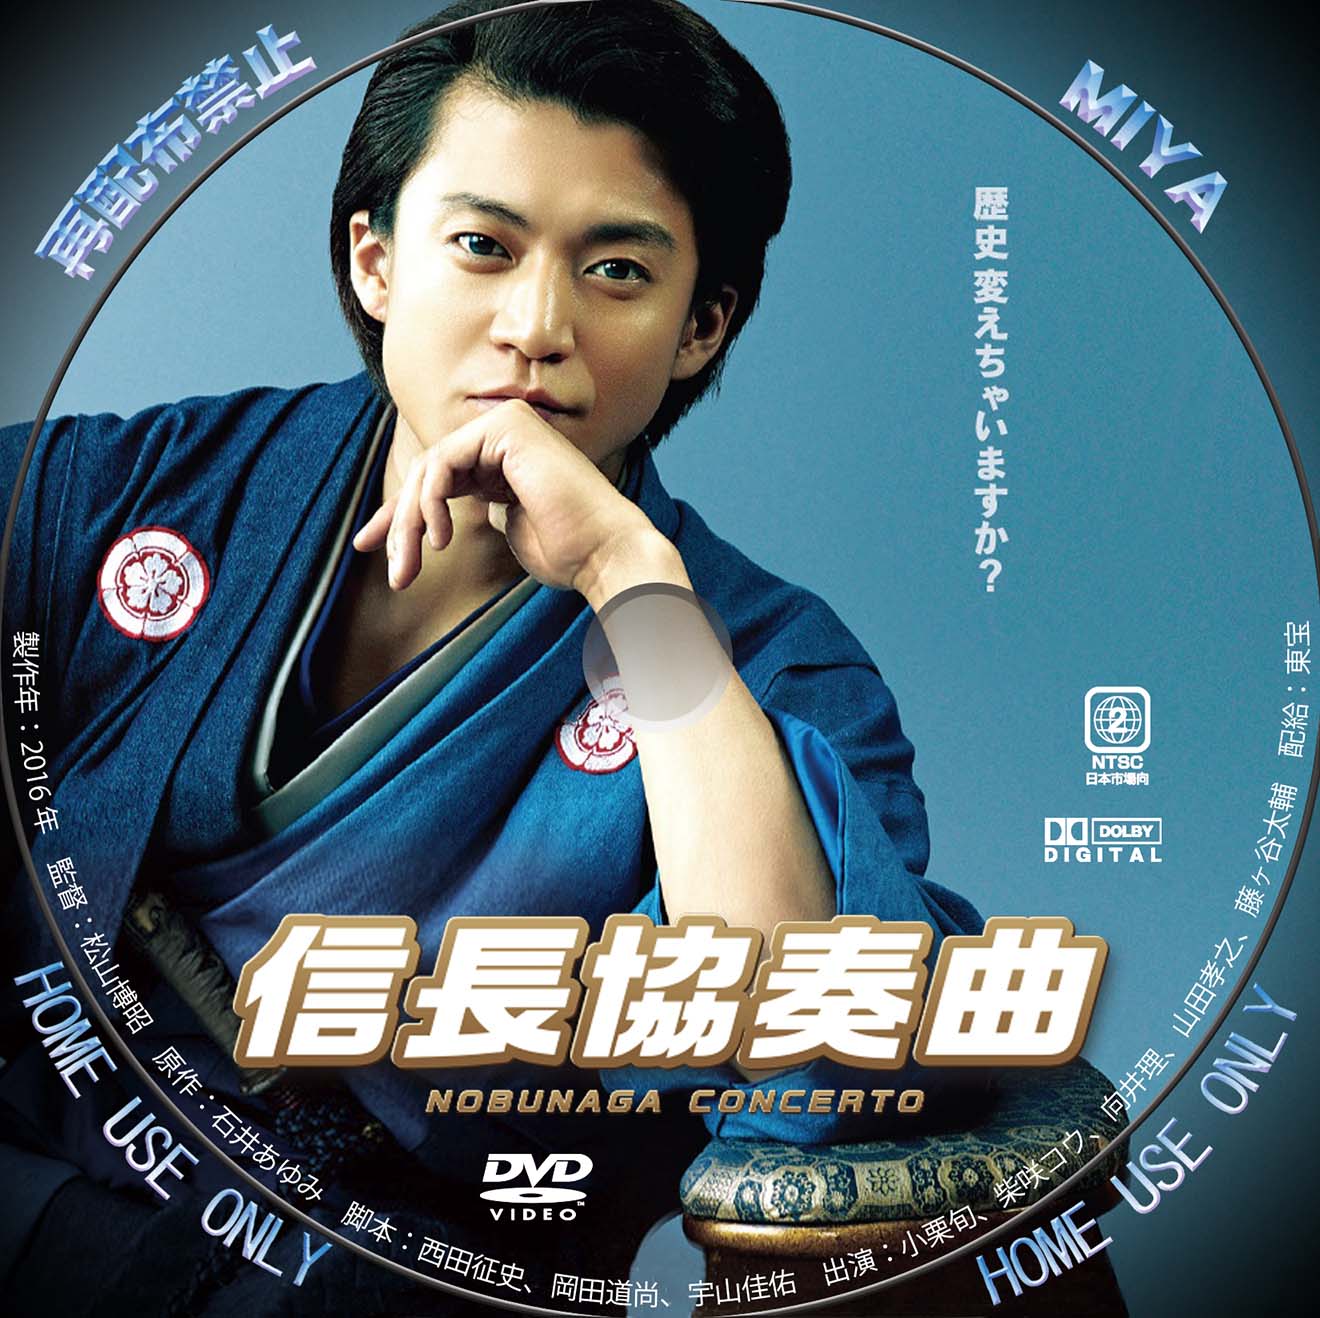 信長協奏曲(コンツェルト) DVD-BOX〈7枚組〉 - 日本映画